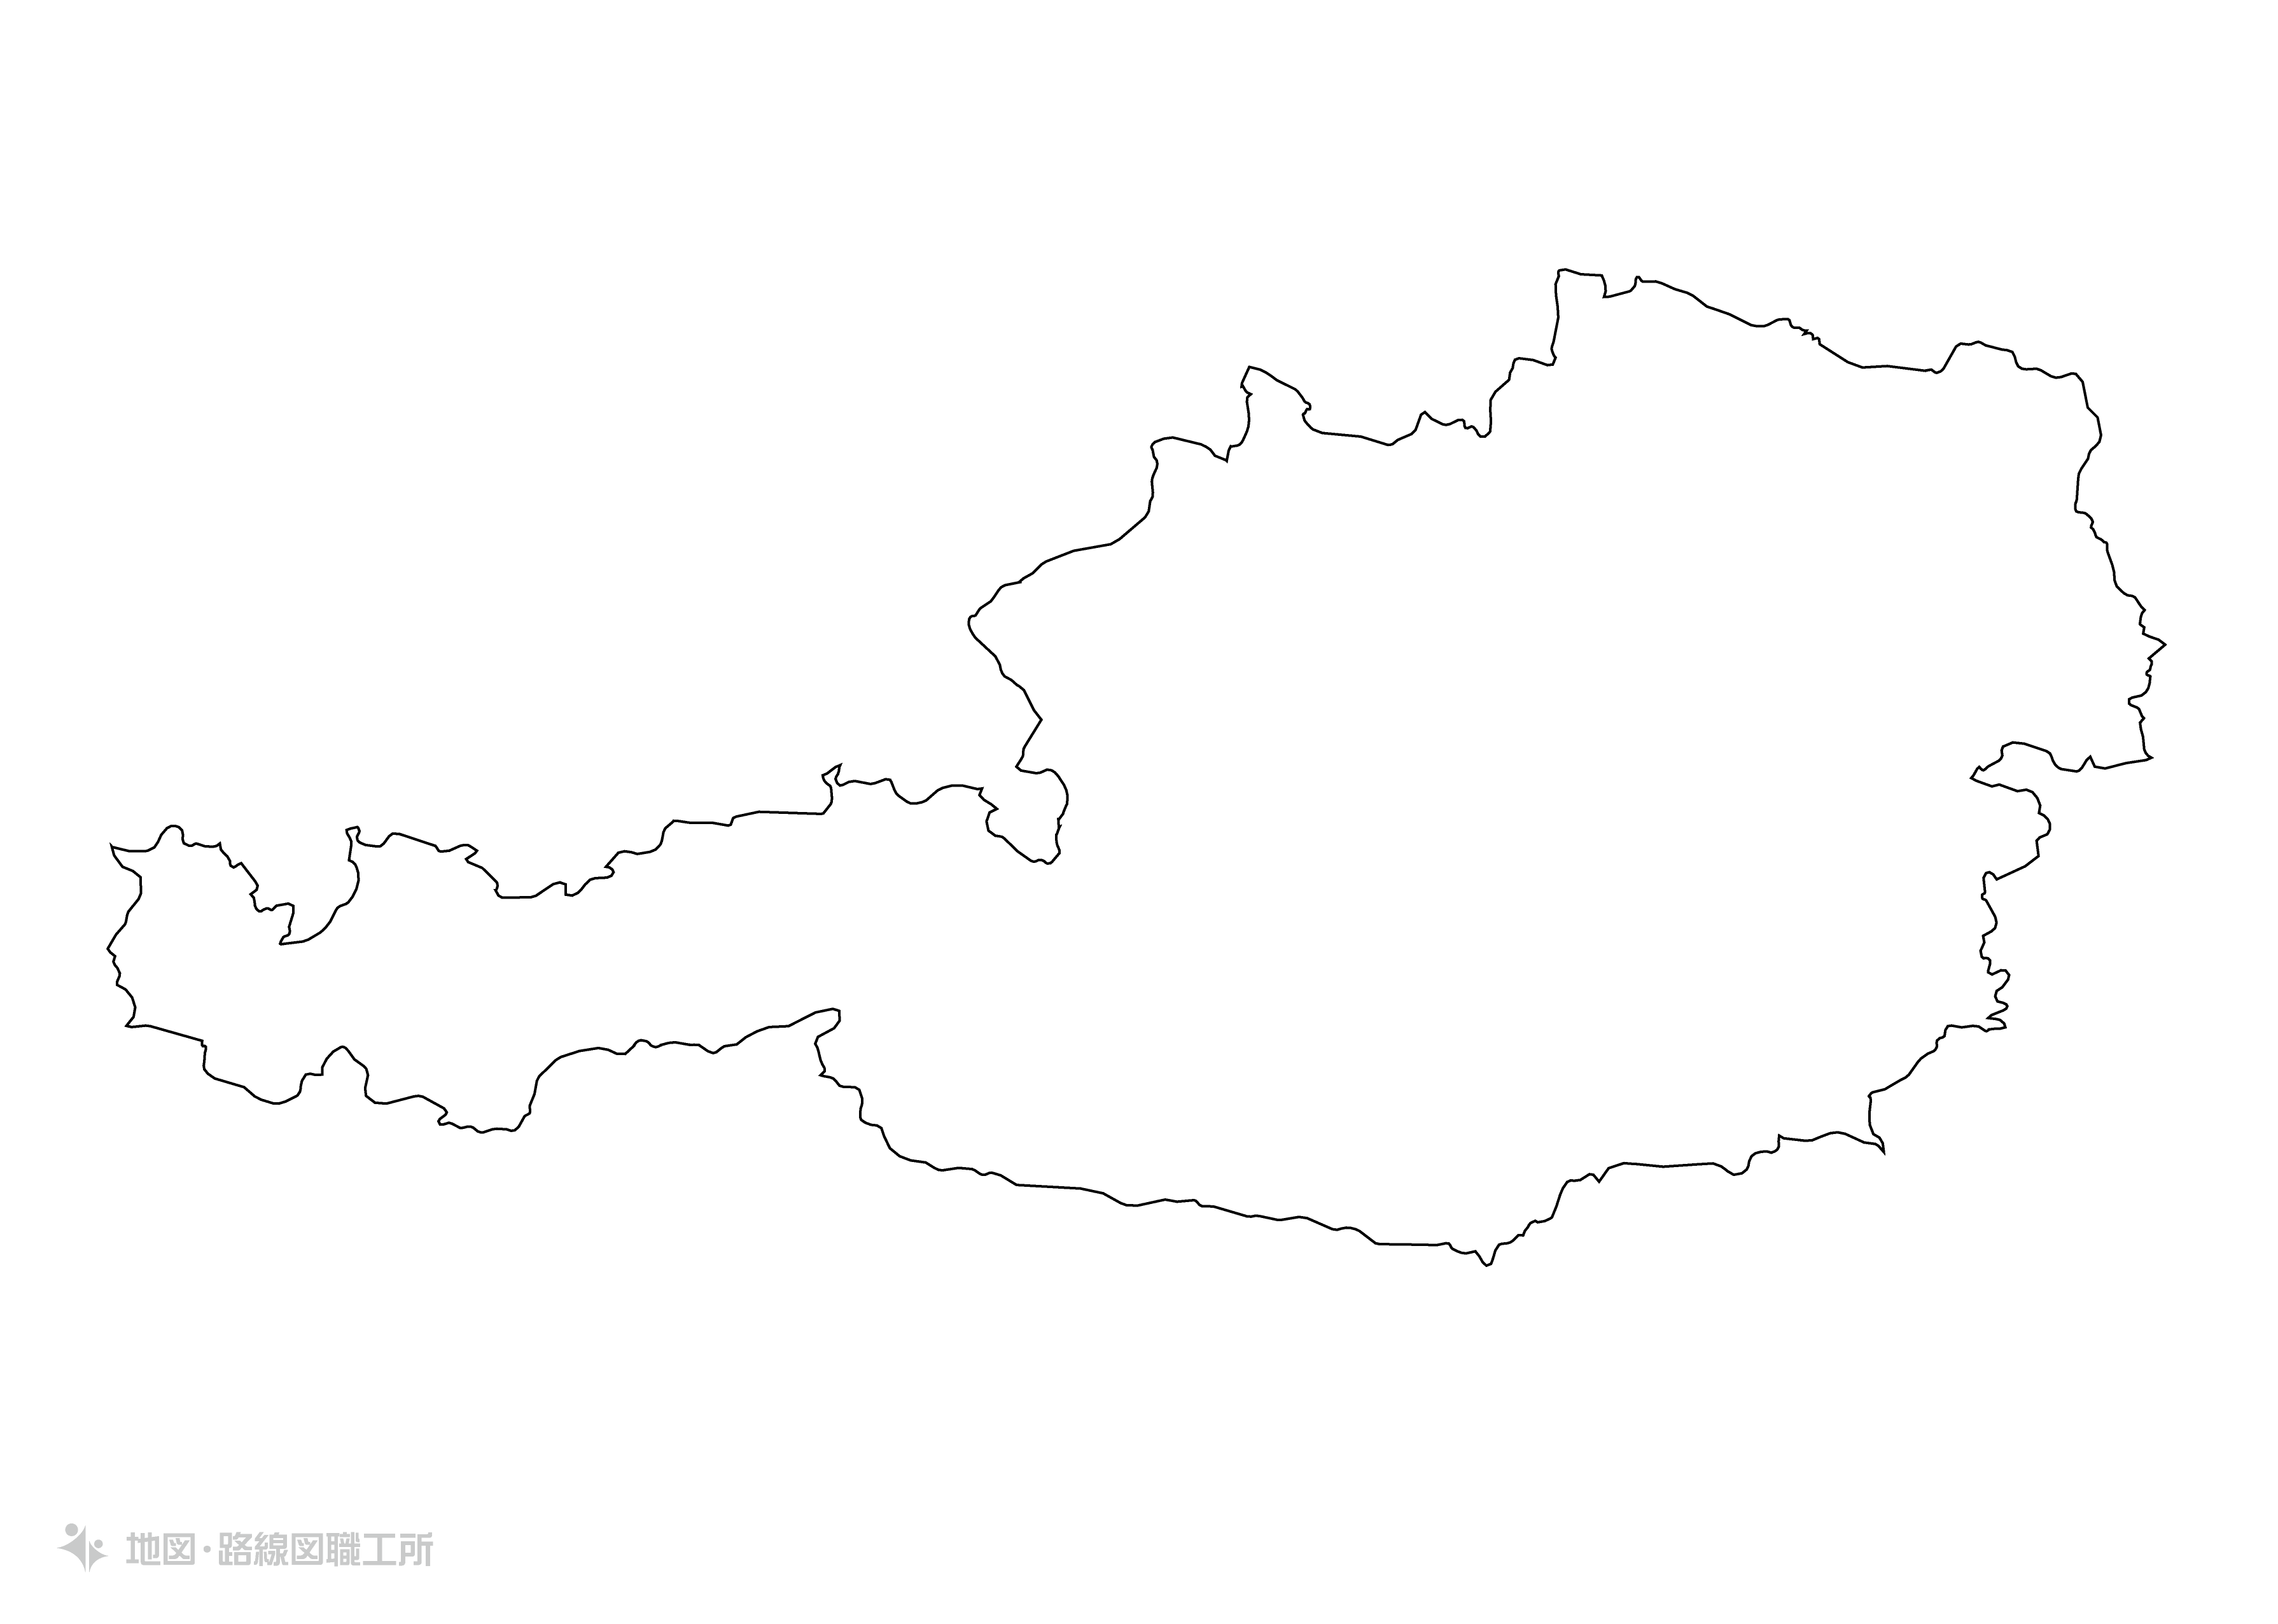 世界の白地図 オーストリア共和国 republic-of-austria map